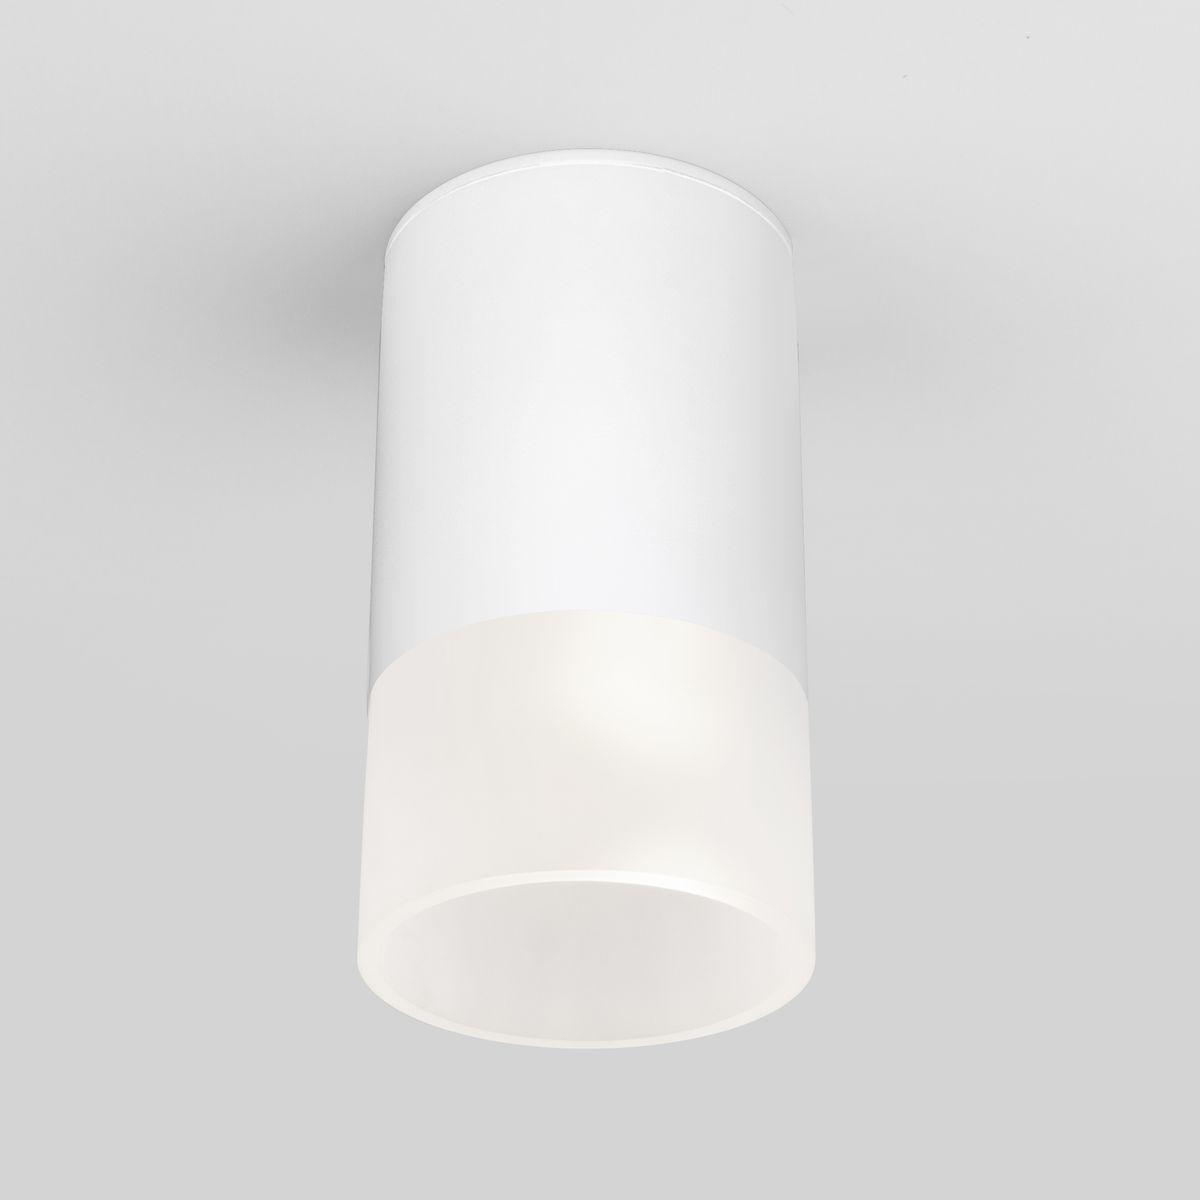 Уличный светодиодный светильник Elektrostandard Light Led 35139/H белый 4690389177927 светодиодный шар 30 см белый rl b30 100 w